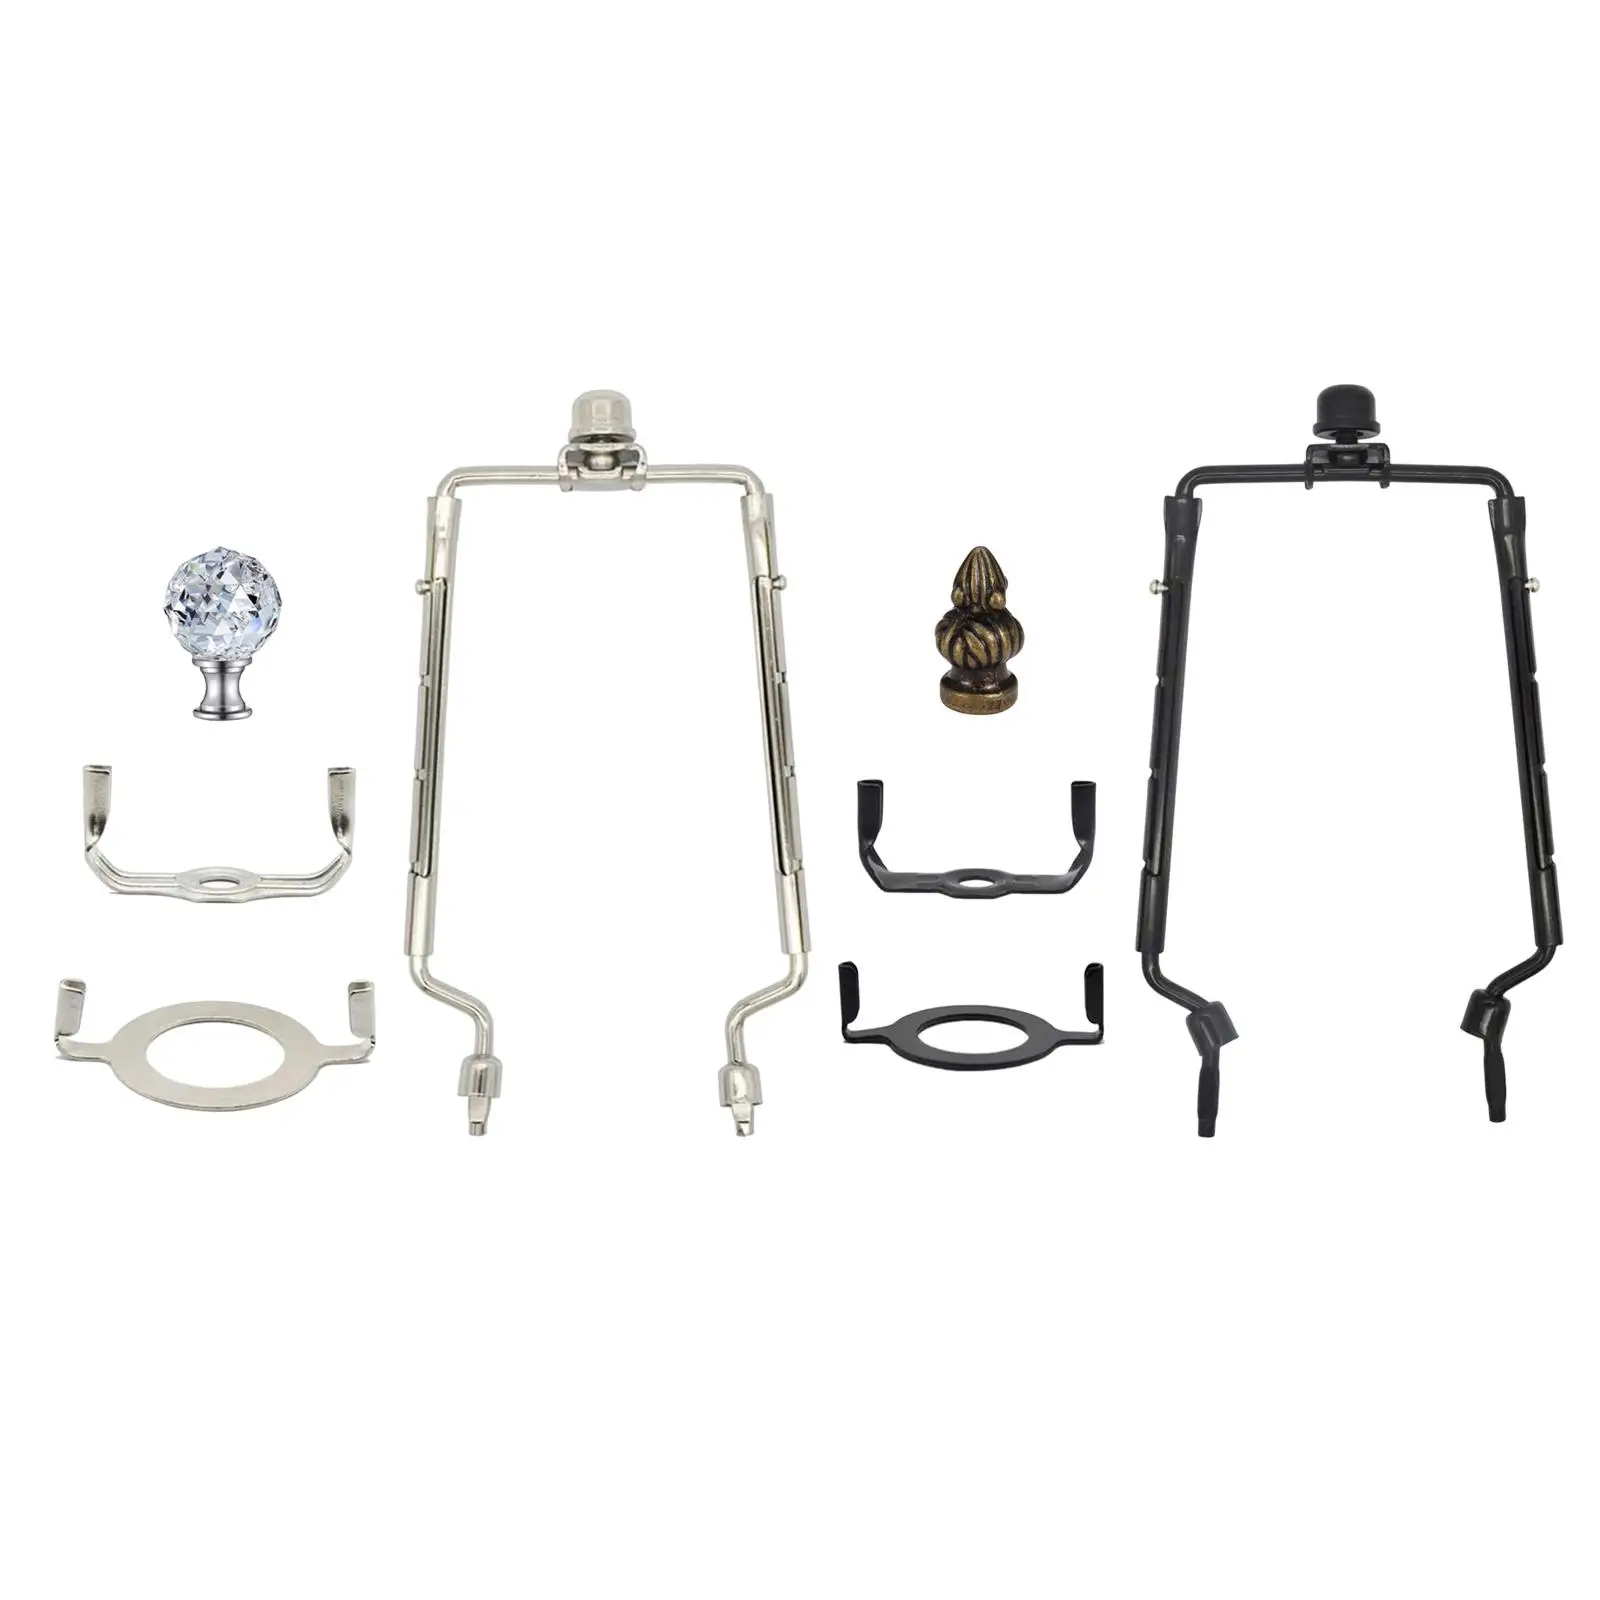 Detachable Lamp Shade Harp Holder Support Bracket for Floor Table Light